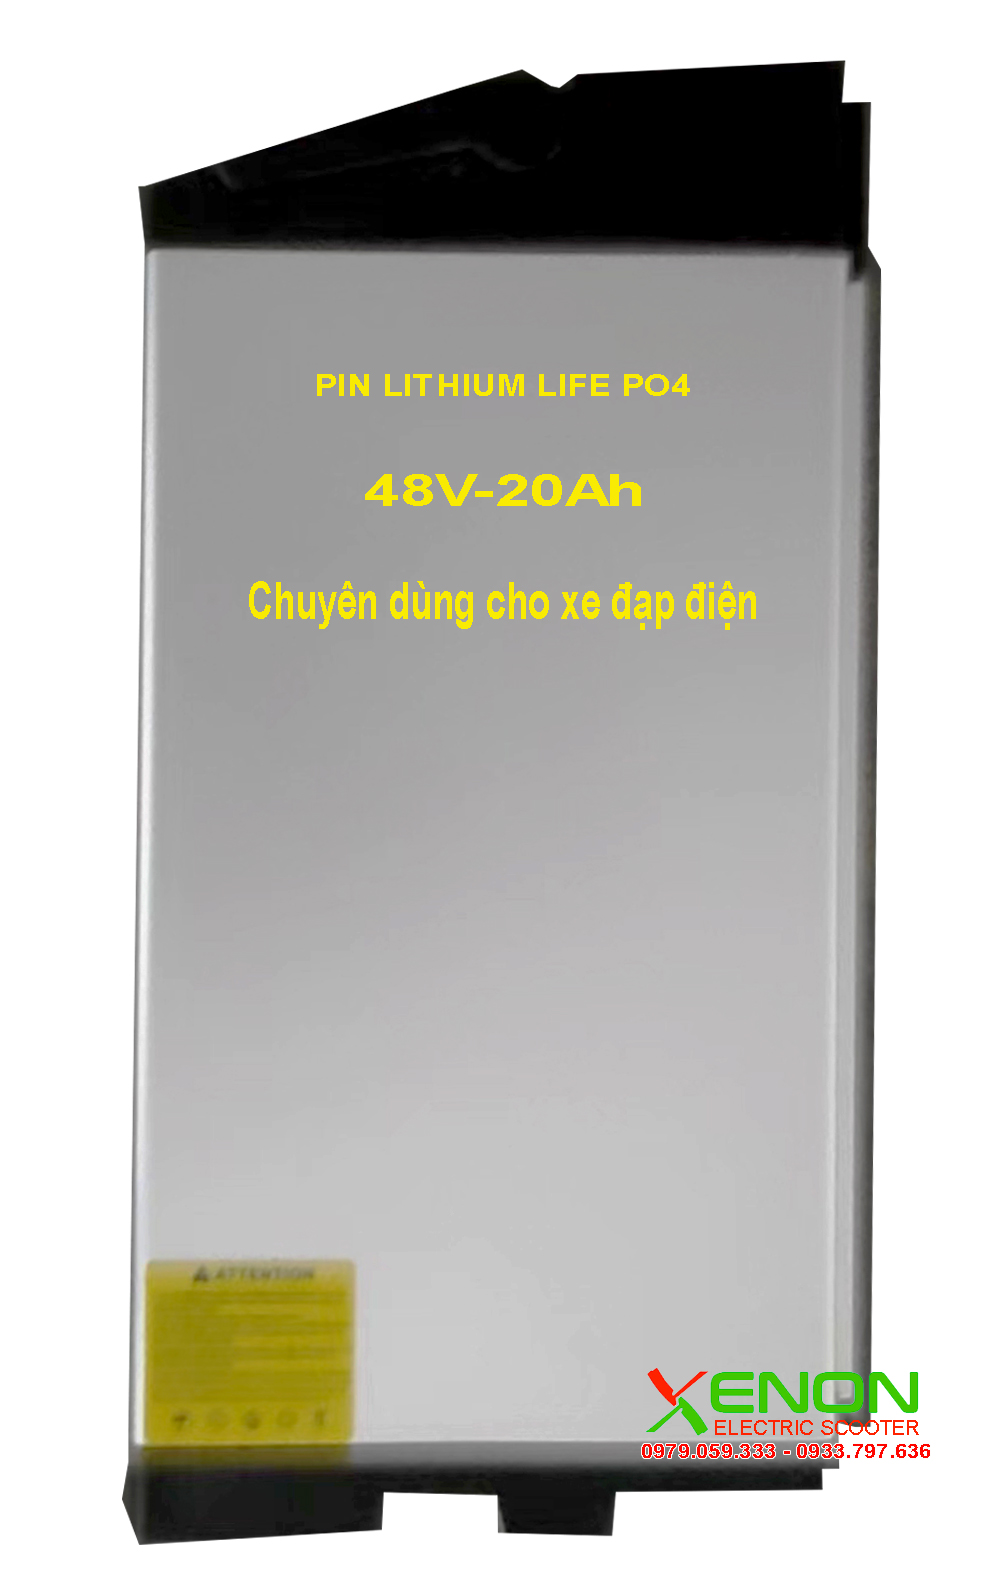 Pin Lithium xe điện 48V 20Ah chuyên cho xe điện cao cấp hiệu Xenon